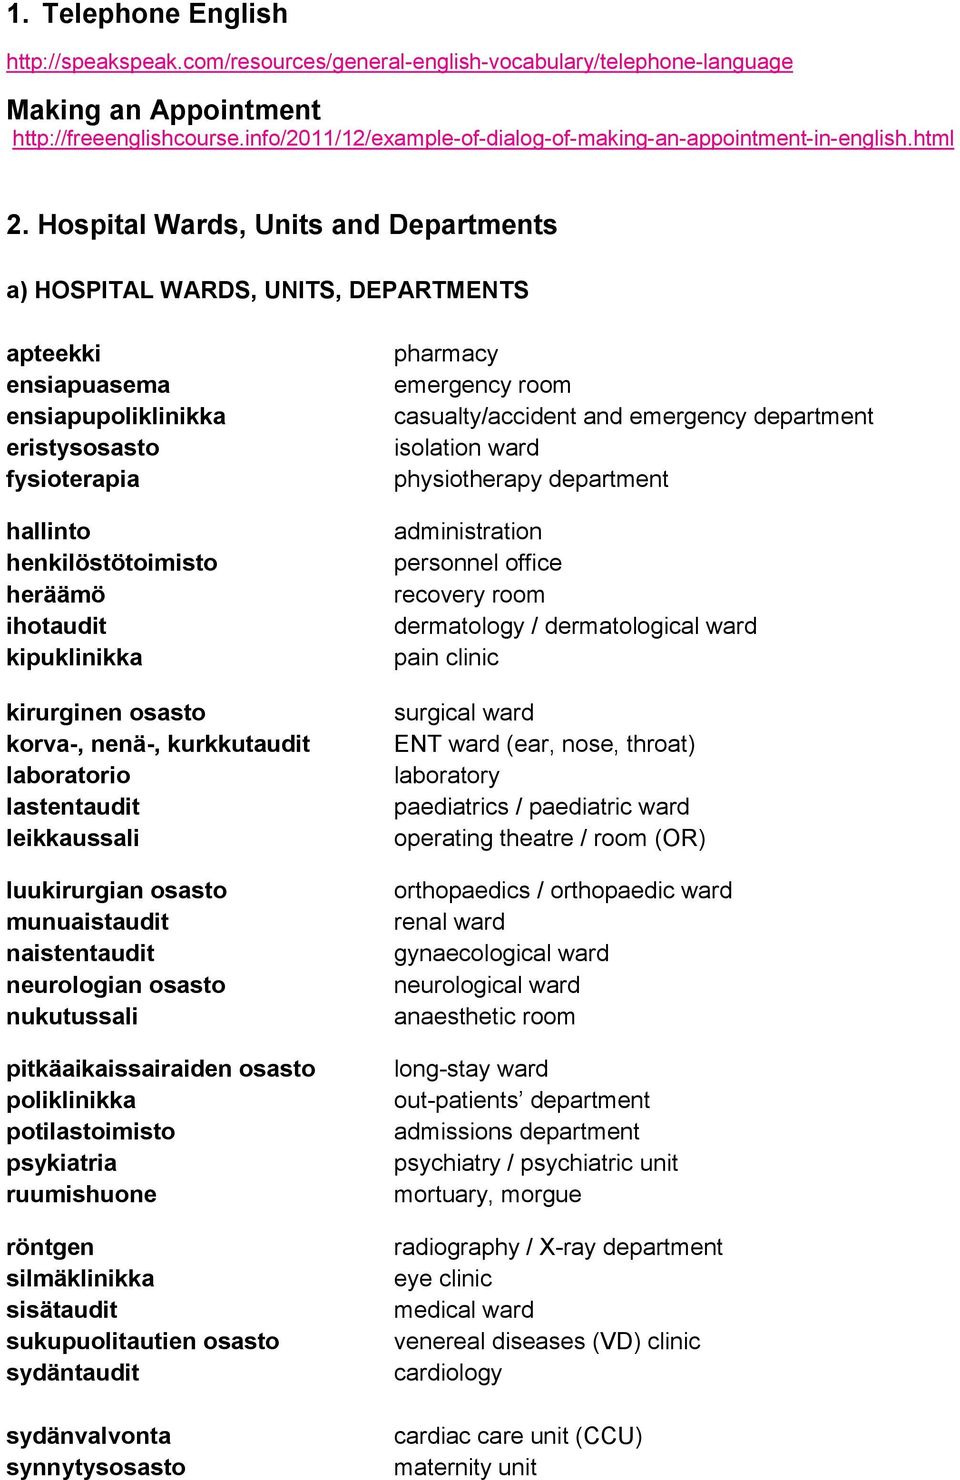 Hospital Wards, Units and Departments a) HOSPITAL WARDS, UNITS, DEPARTMENTS apteekki ensiapuasema ensiapupoliklinikka eristysosasto fysioterapia hallinto henkilöstötoimisto heräämö ihotaudit